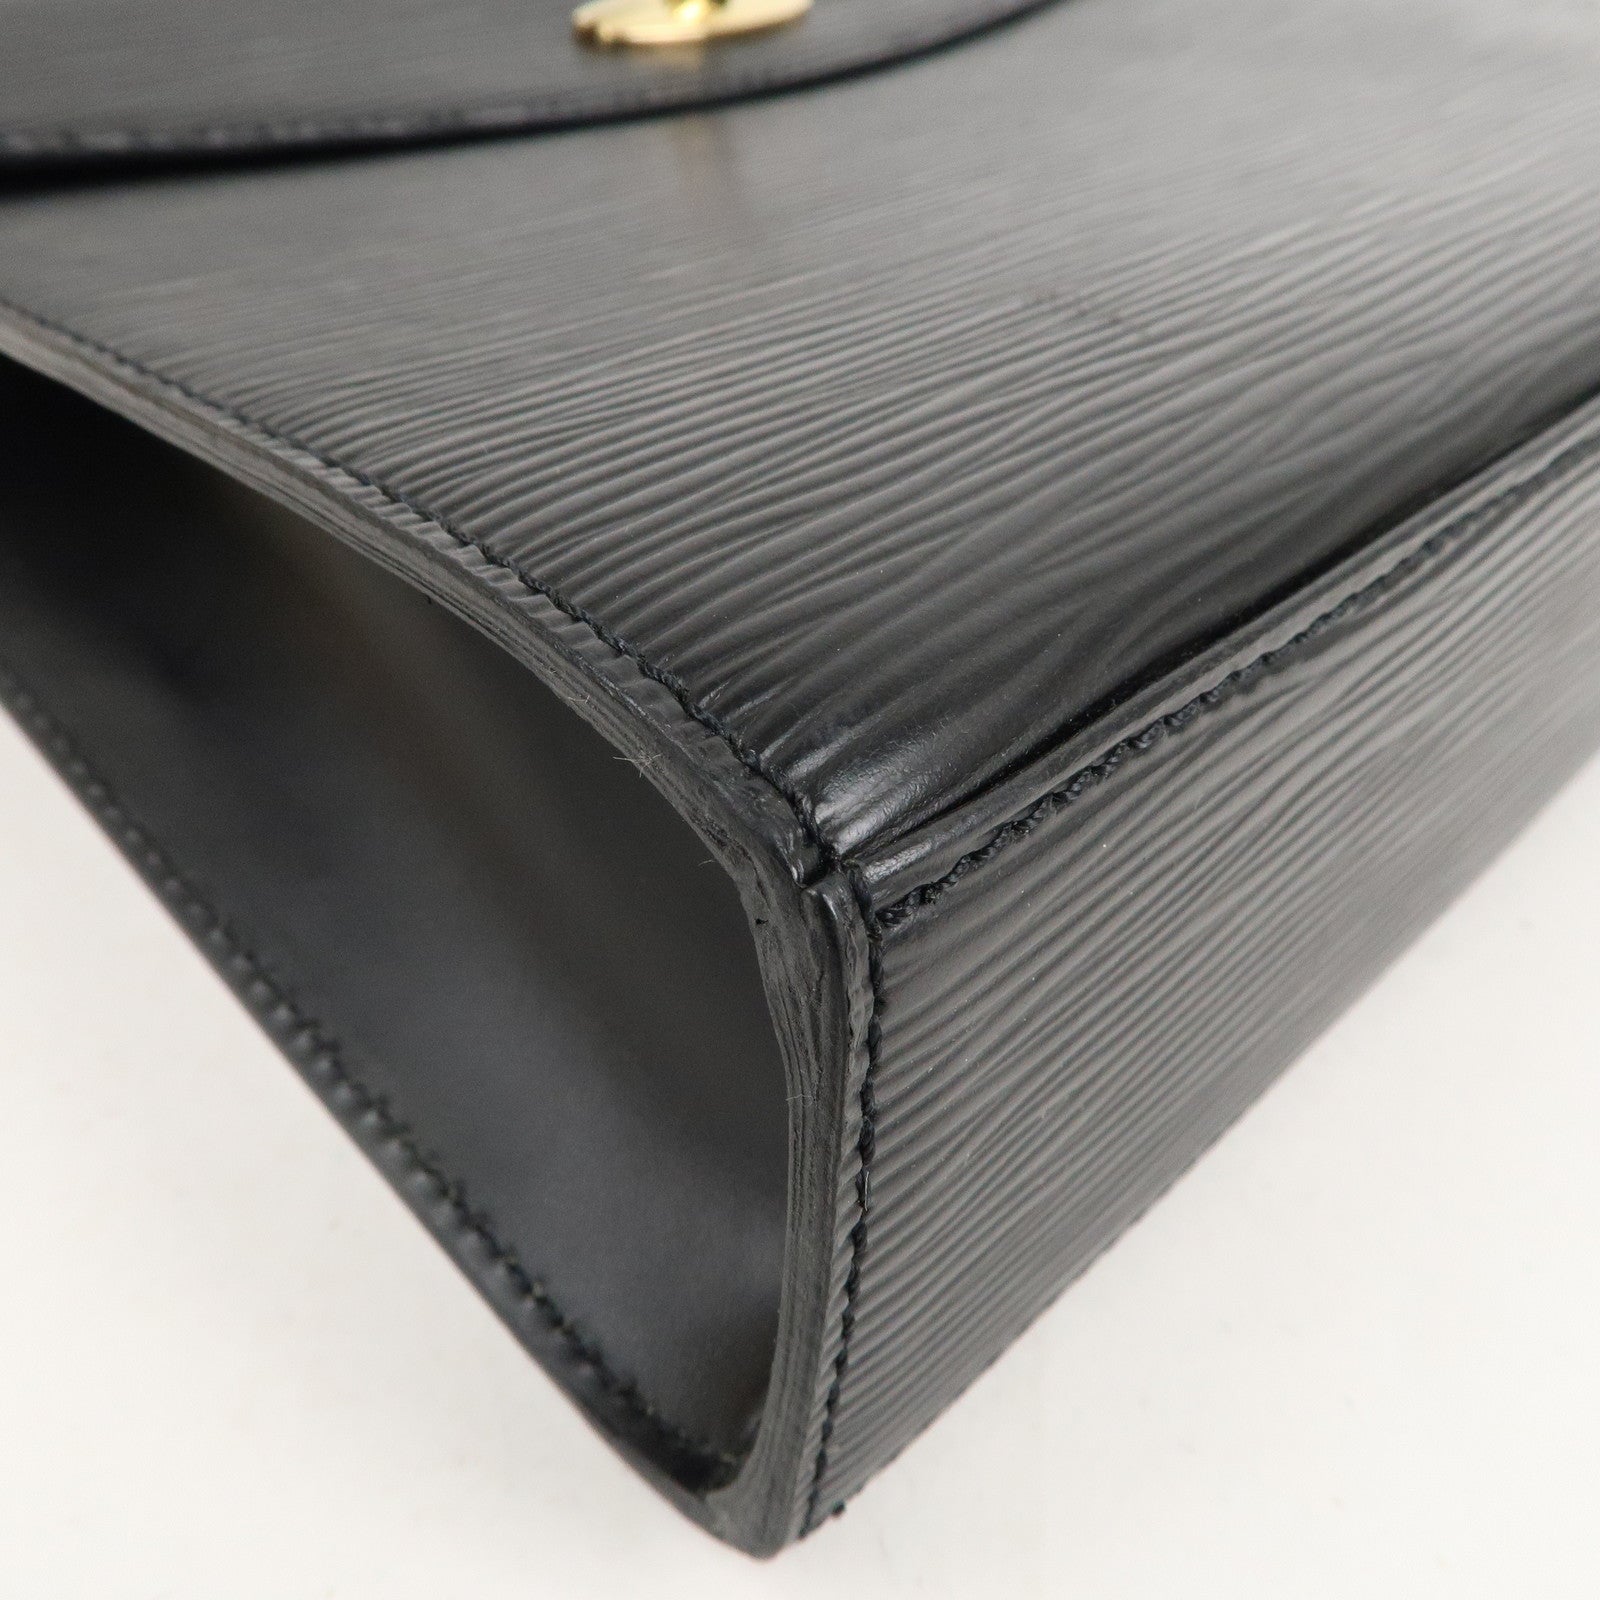 Authentic Louis Vuitton Black Epi Montaigne Clutch Bag, Luxury